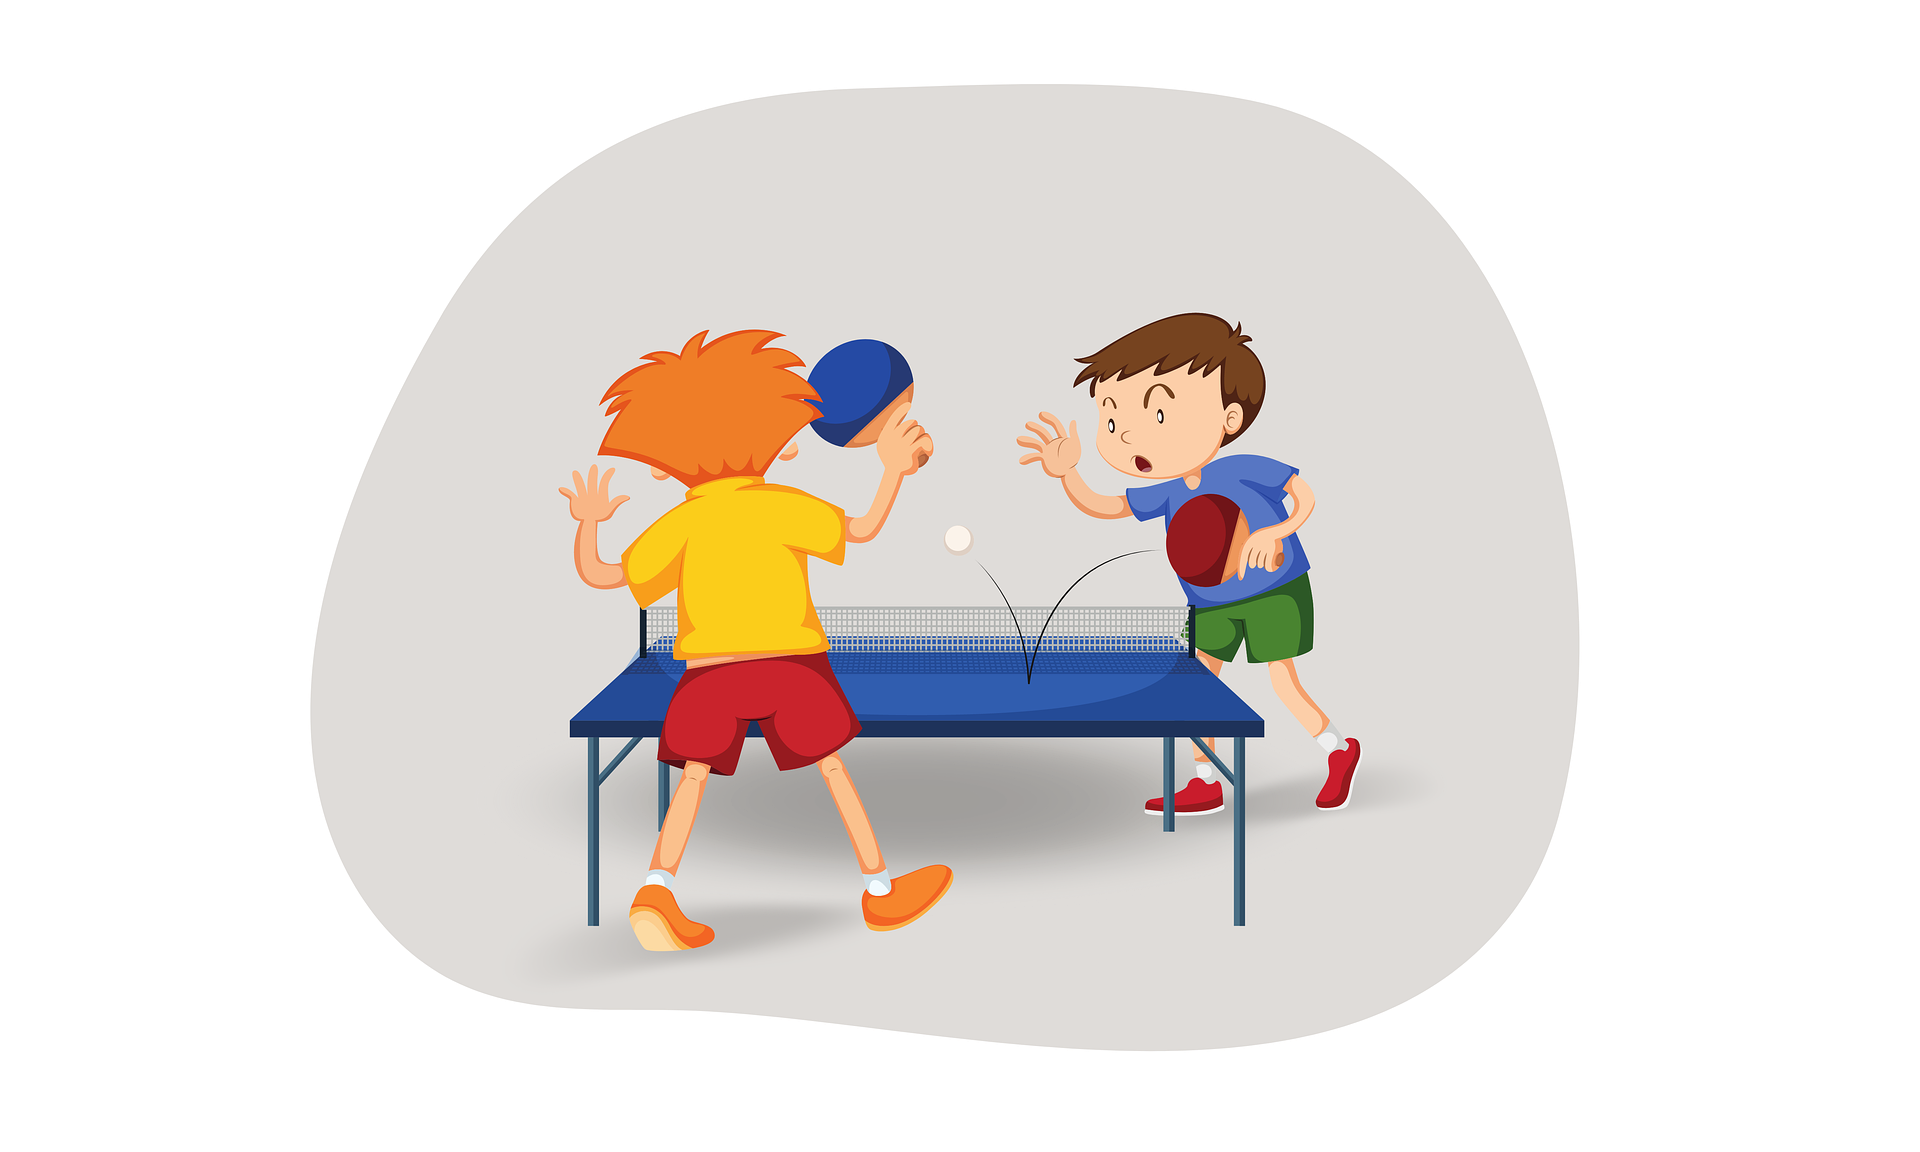 Bild aus pixabay von Rosy zeigt zwei Tischtennisspieler